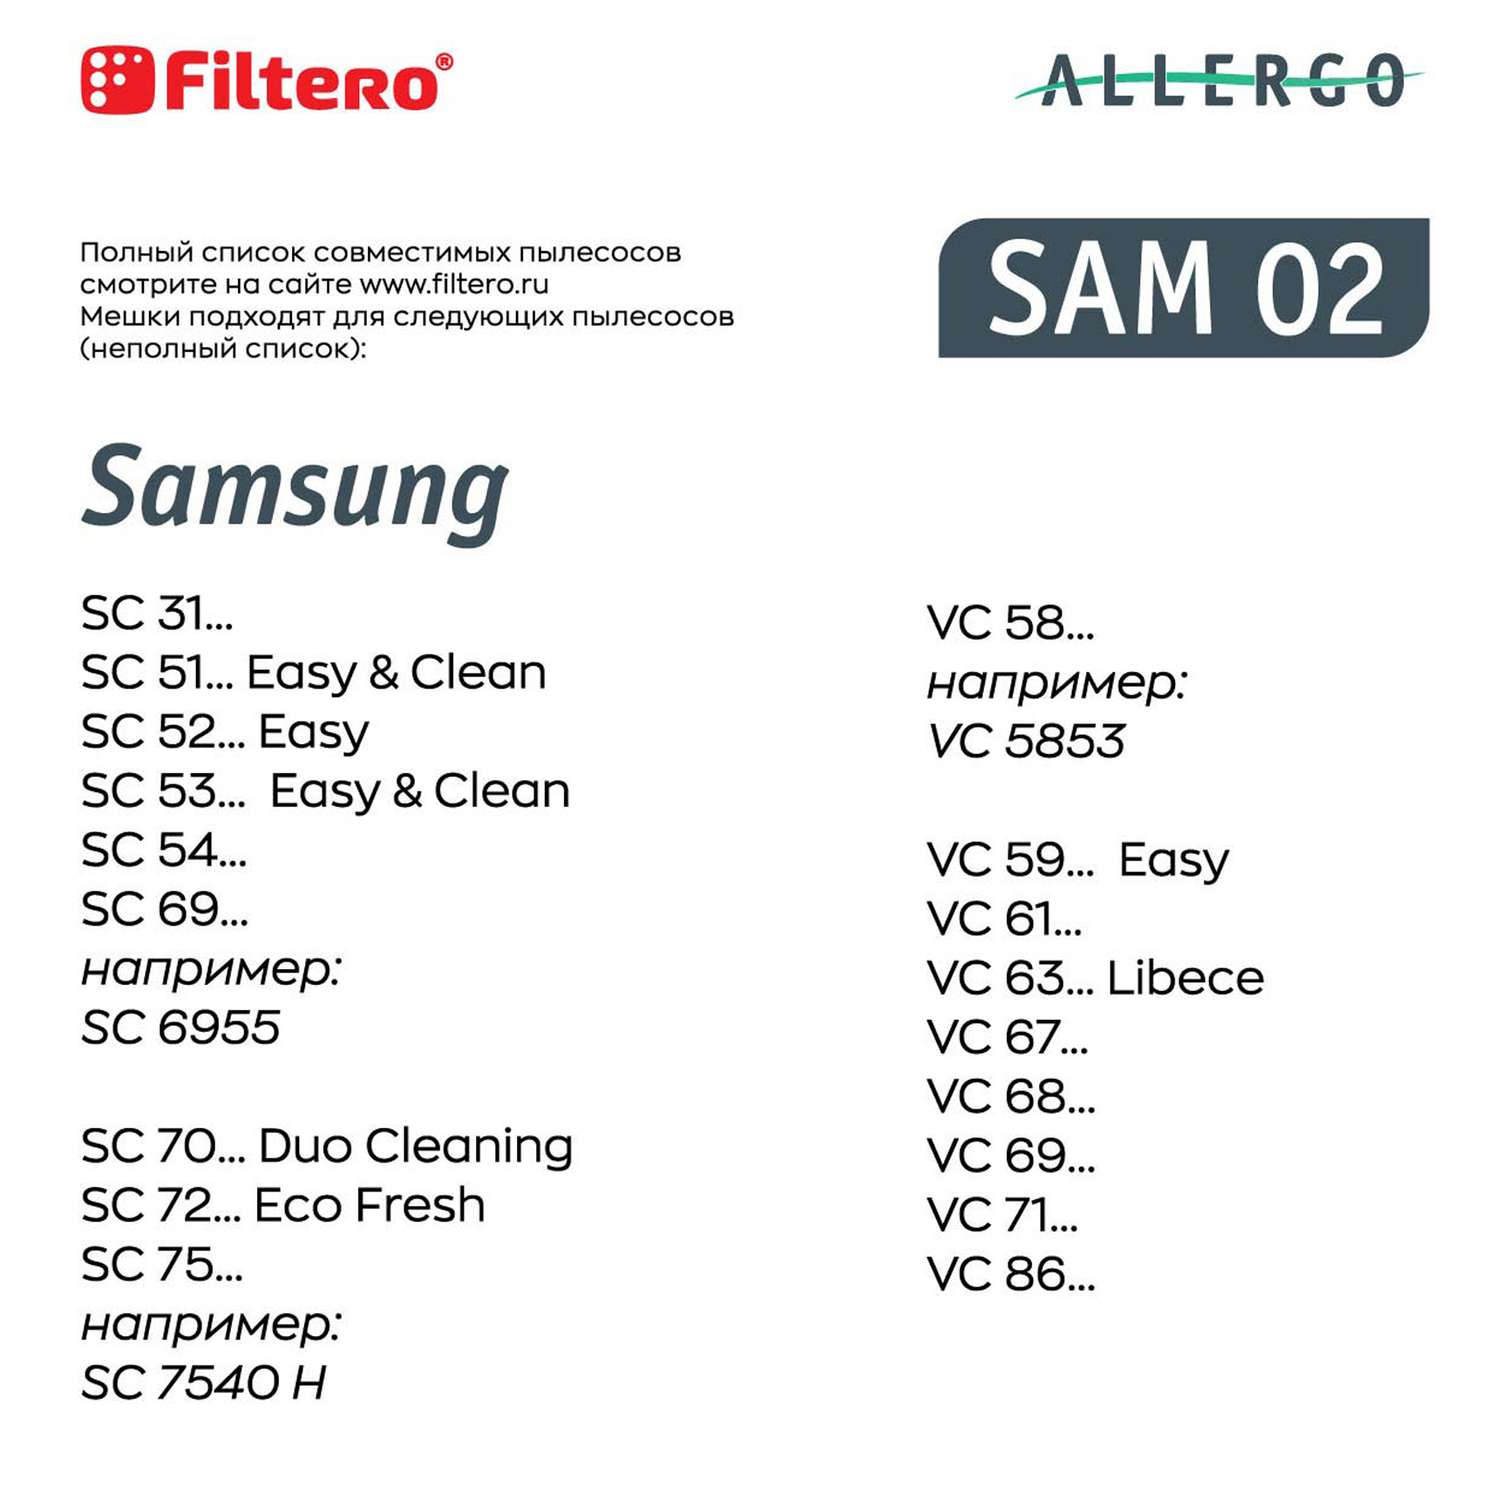 Пылесборники Filtero SAM 02 синтетические Allergo 4 шт - фото 10